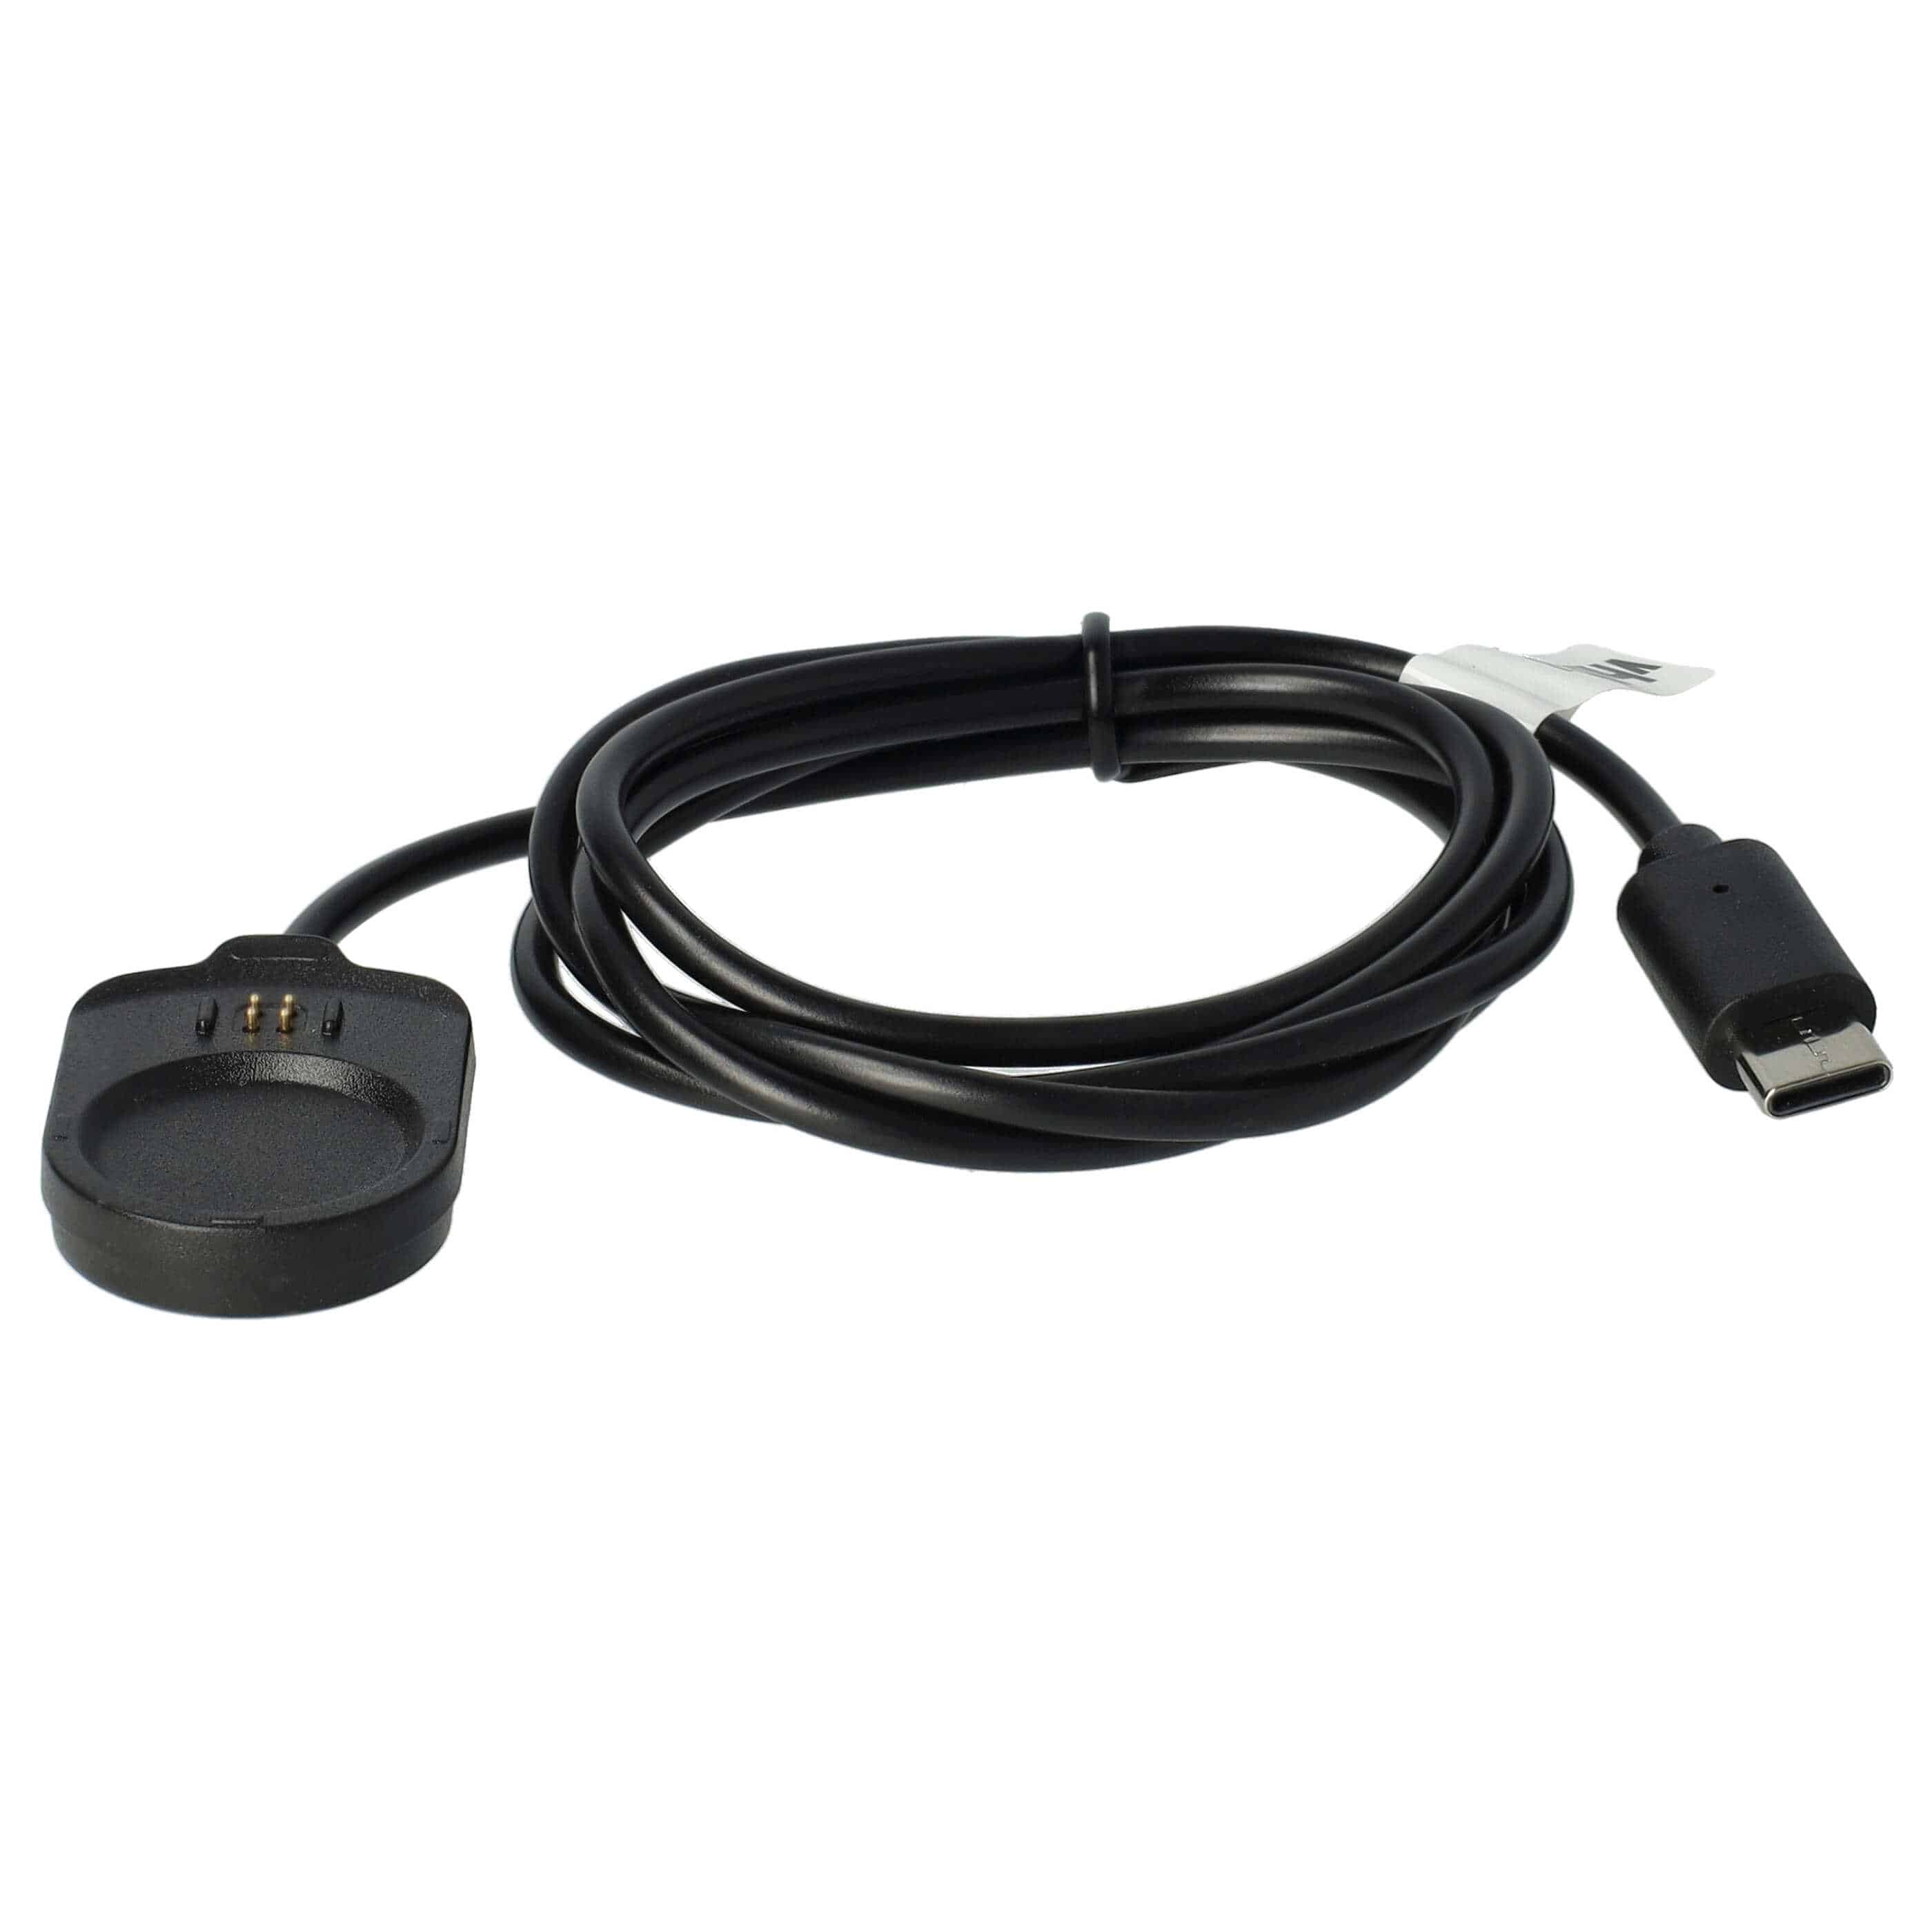 Cable de carga USB reemplaza Garmin 010-13225-14 para smartwatch Garmin - negro 100 cm